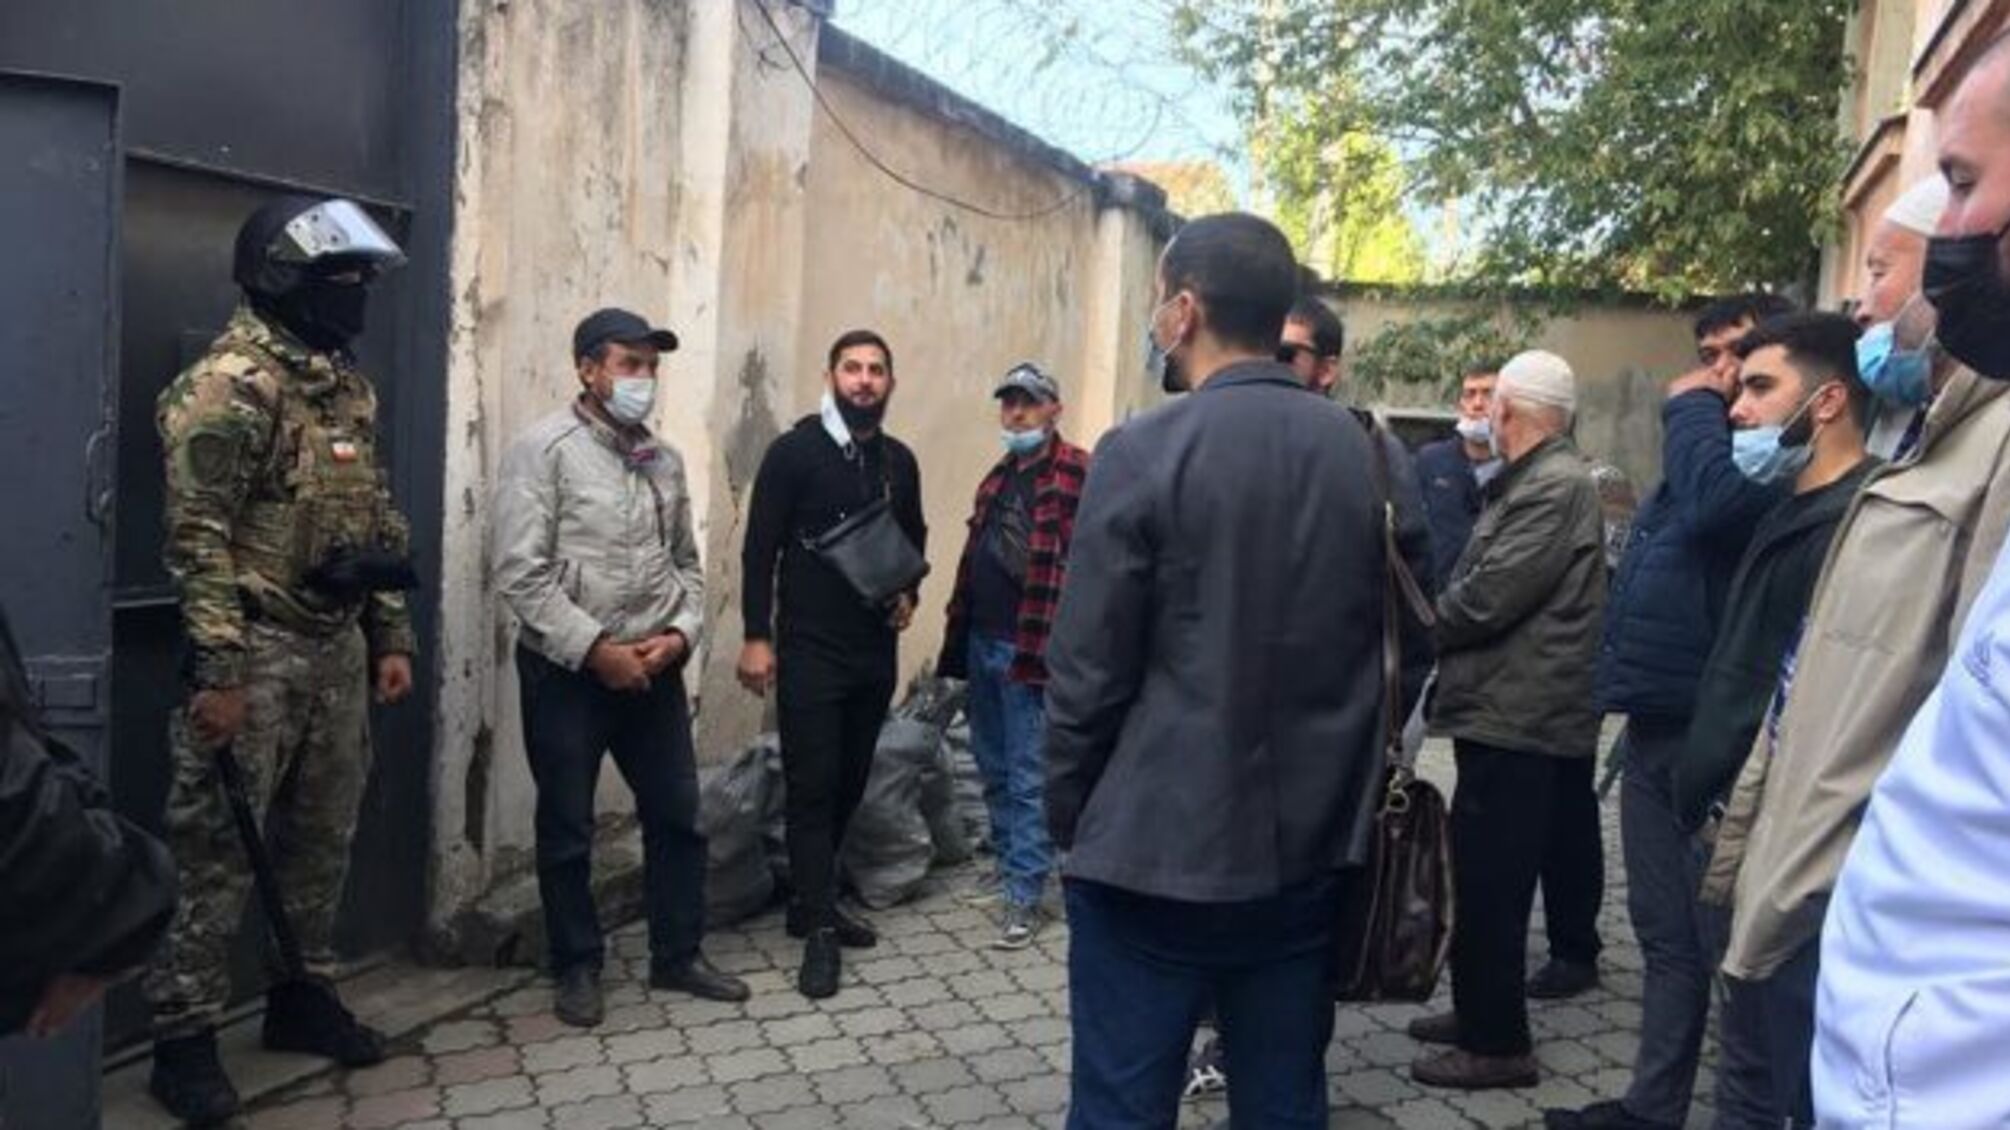 Під «військовим гарнізонним судом» у Криму затримали 15 осіб